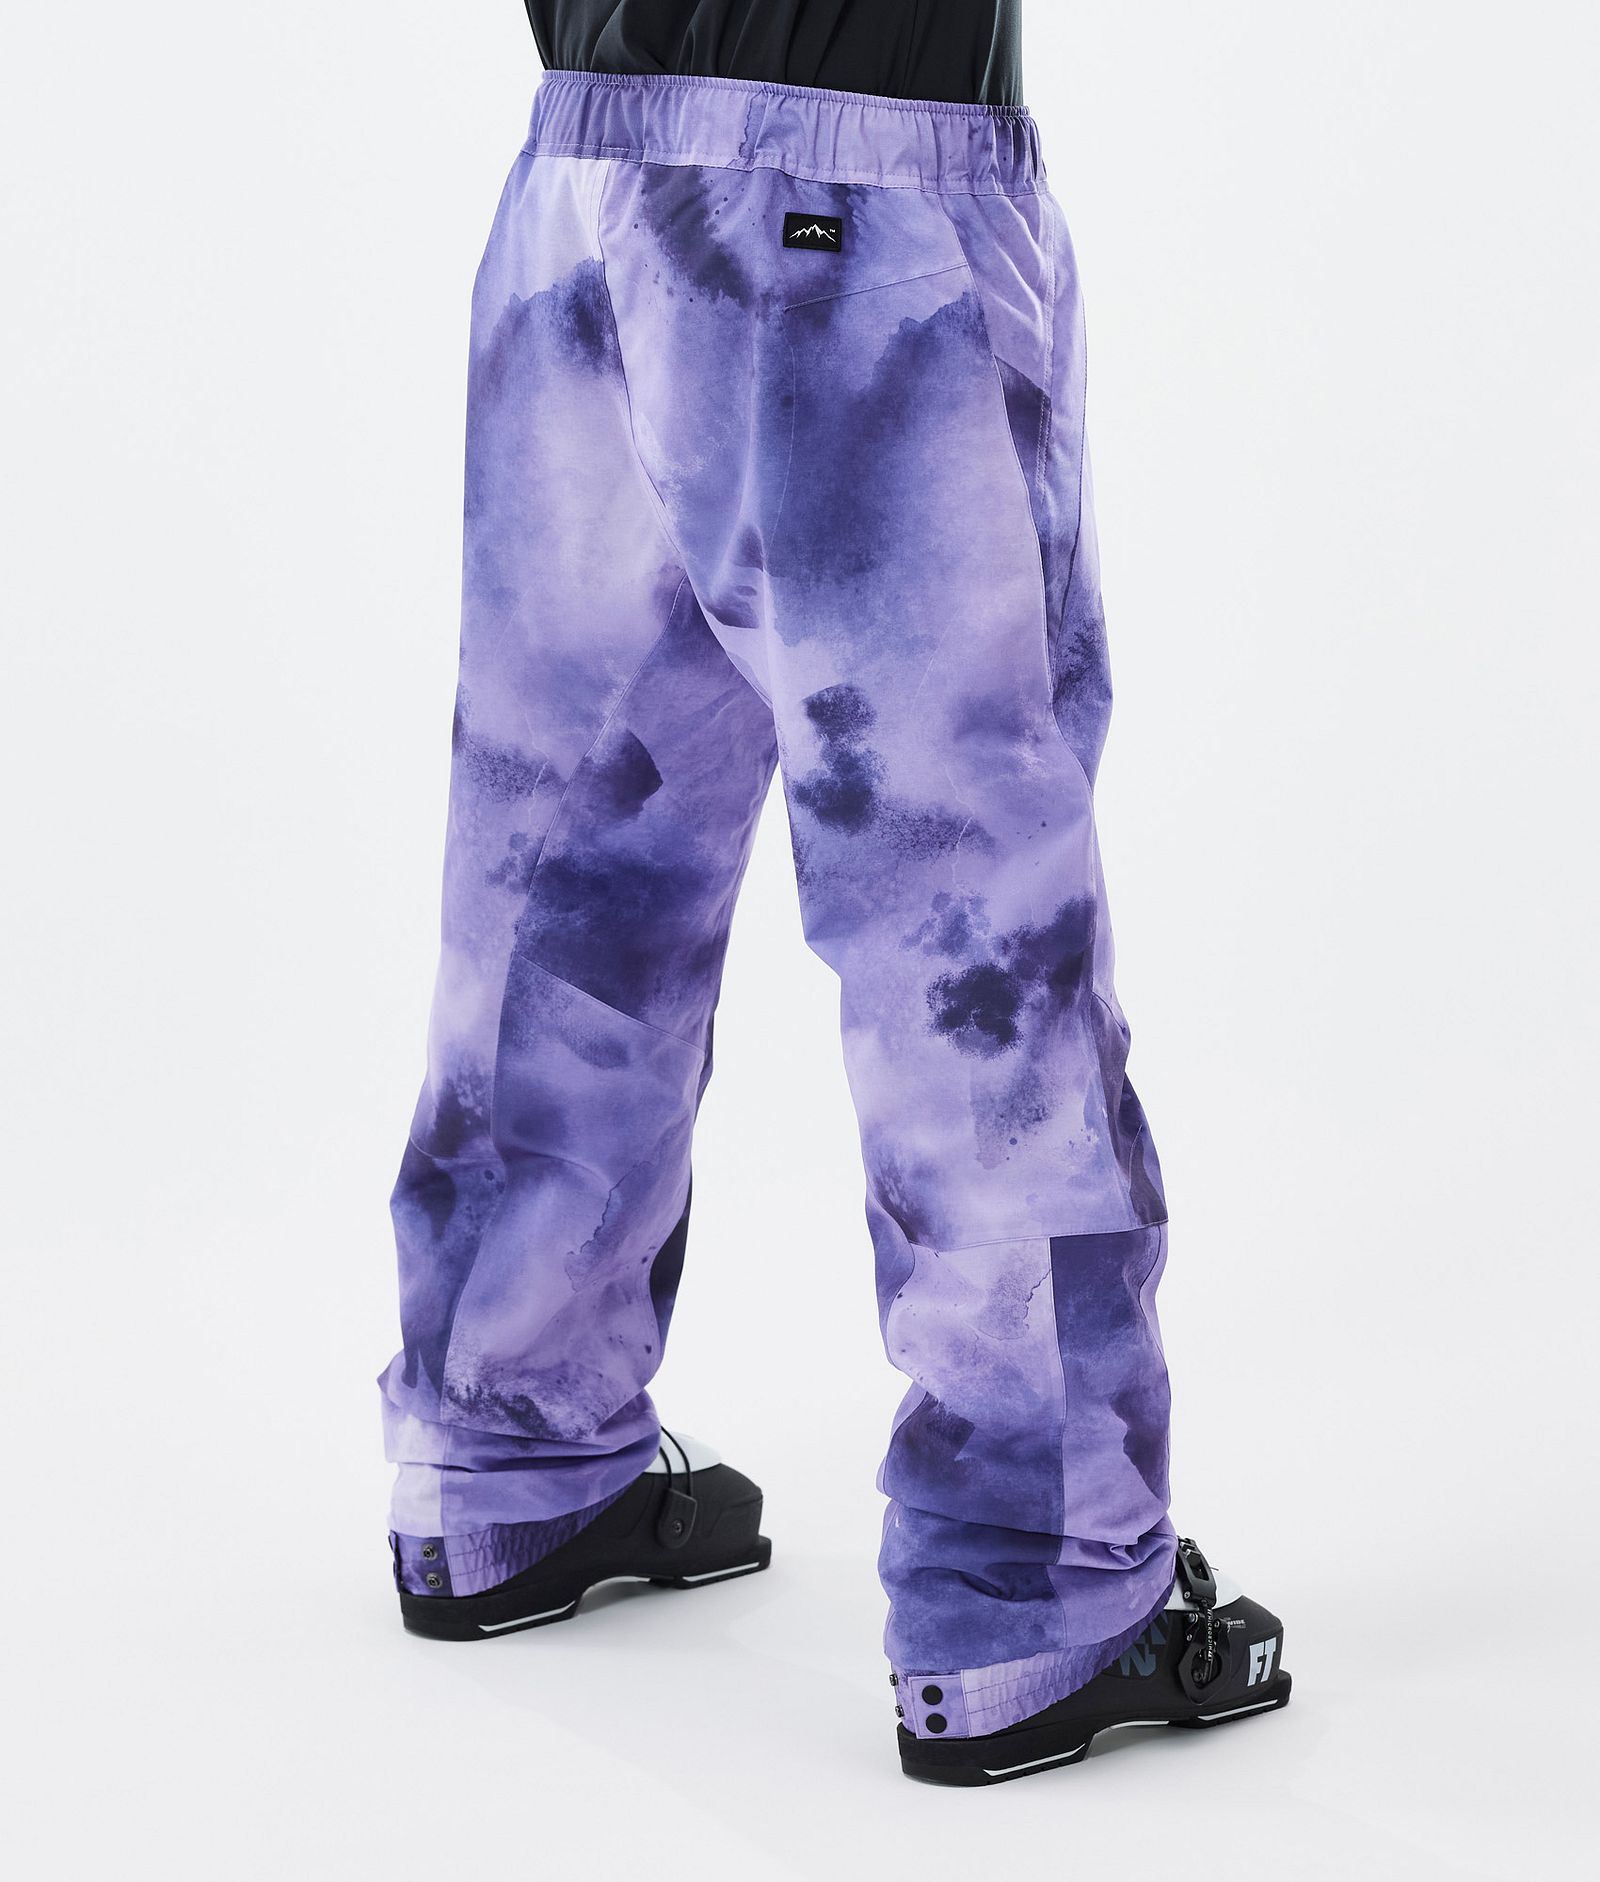 Blizzard Pantalon de Ski Homme Liquid Violet